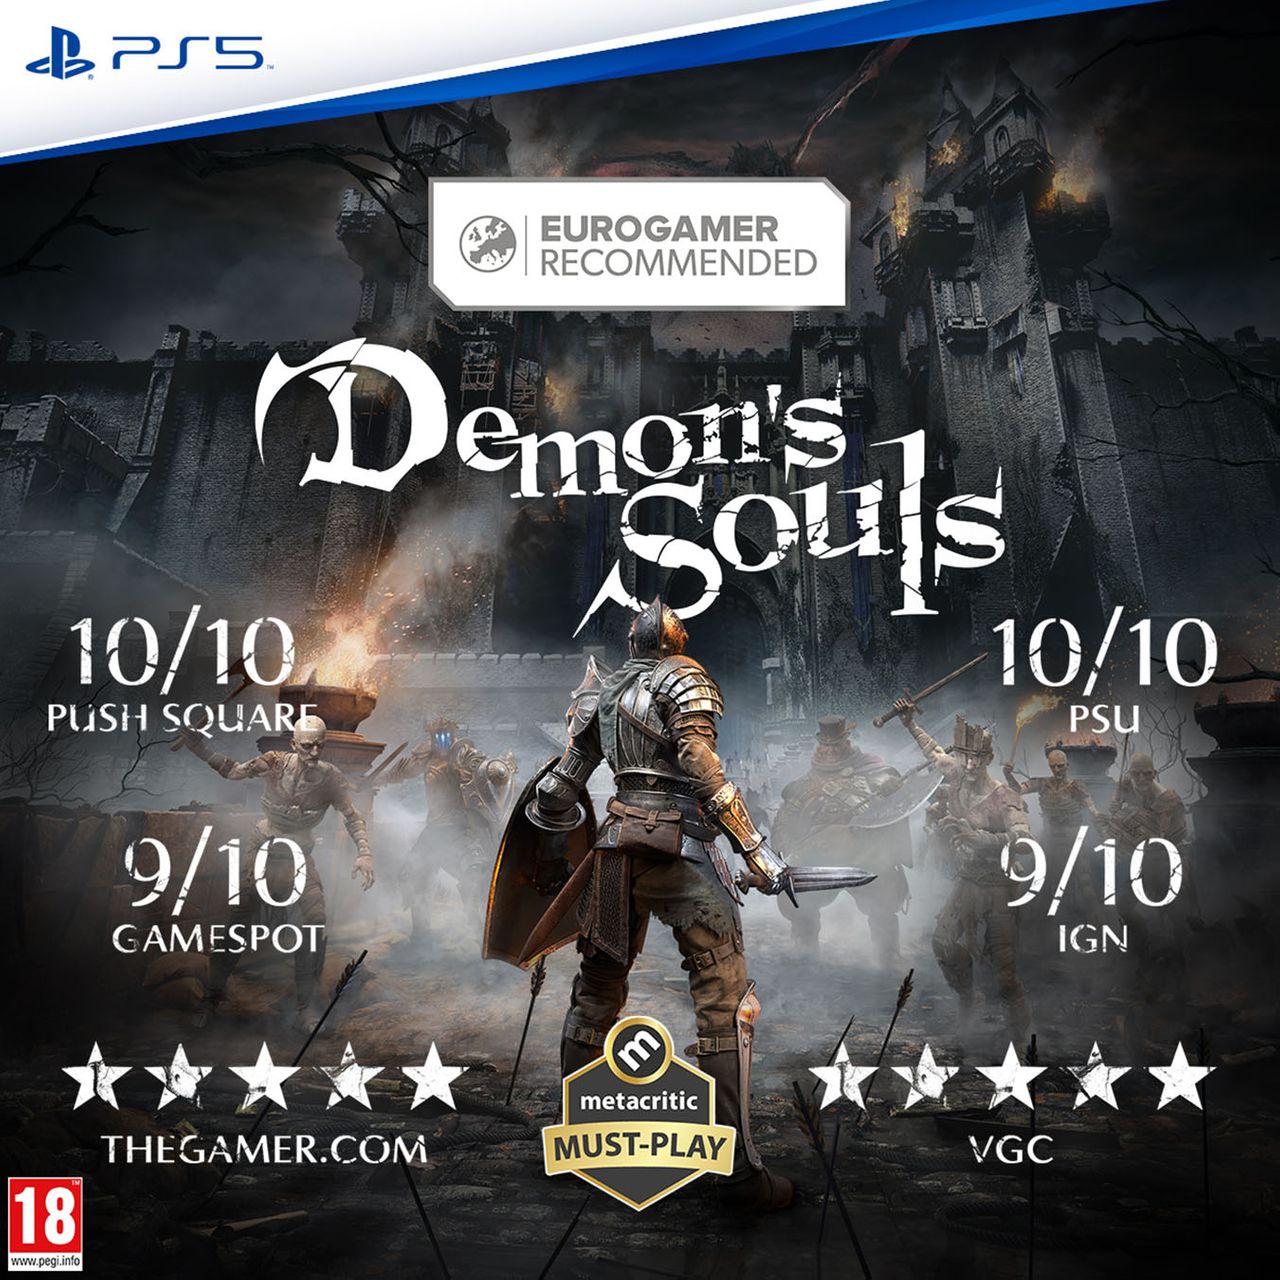 Demon Boss Souls - Demon's Souls Guide - IGN